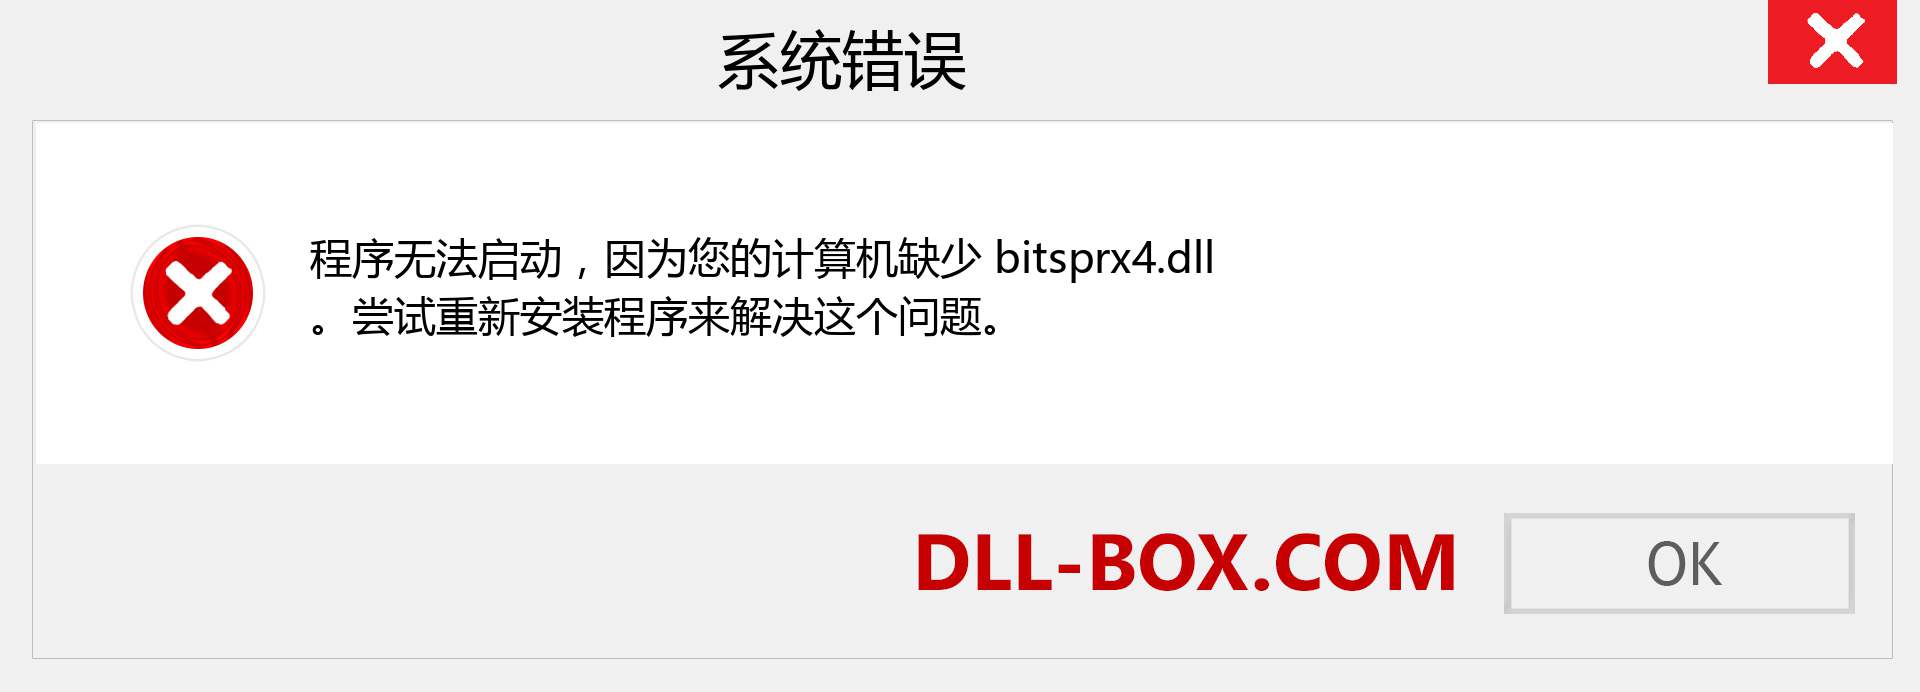 bitsprx4.dll 文件丢失？。 适用于 Windows 7、8、10 的下载 - 修复 Windows、照片、图像上的 bitsprx4 dll 丢失错误